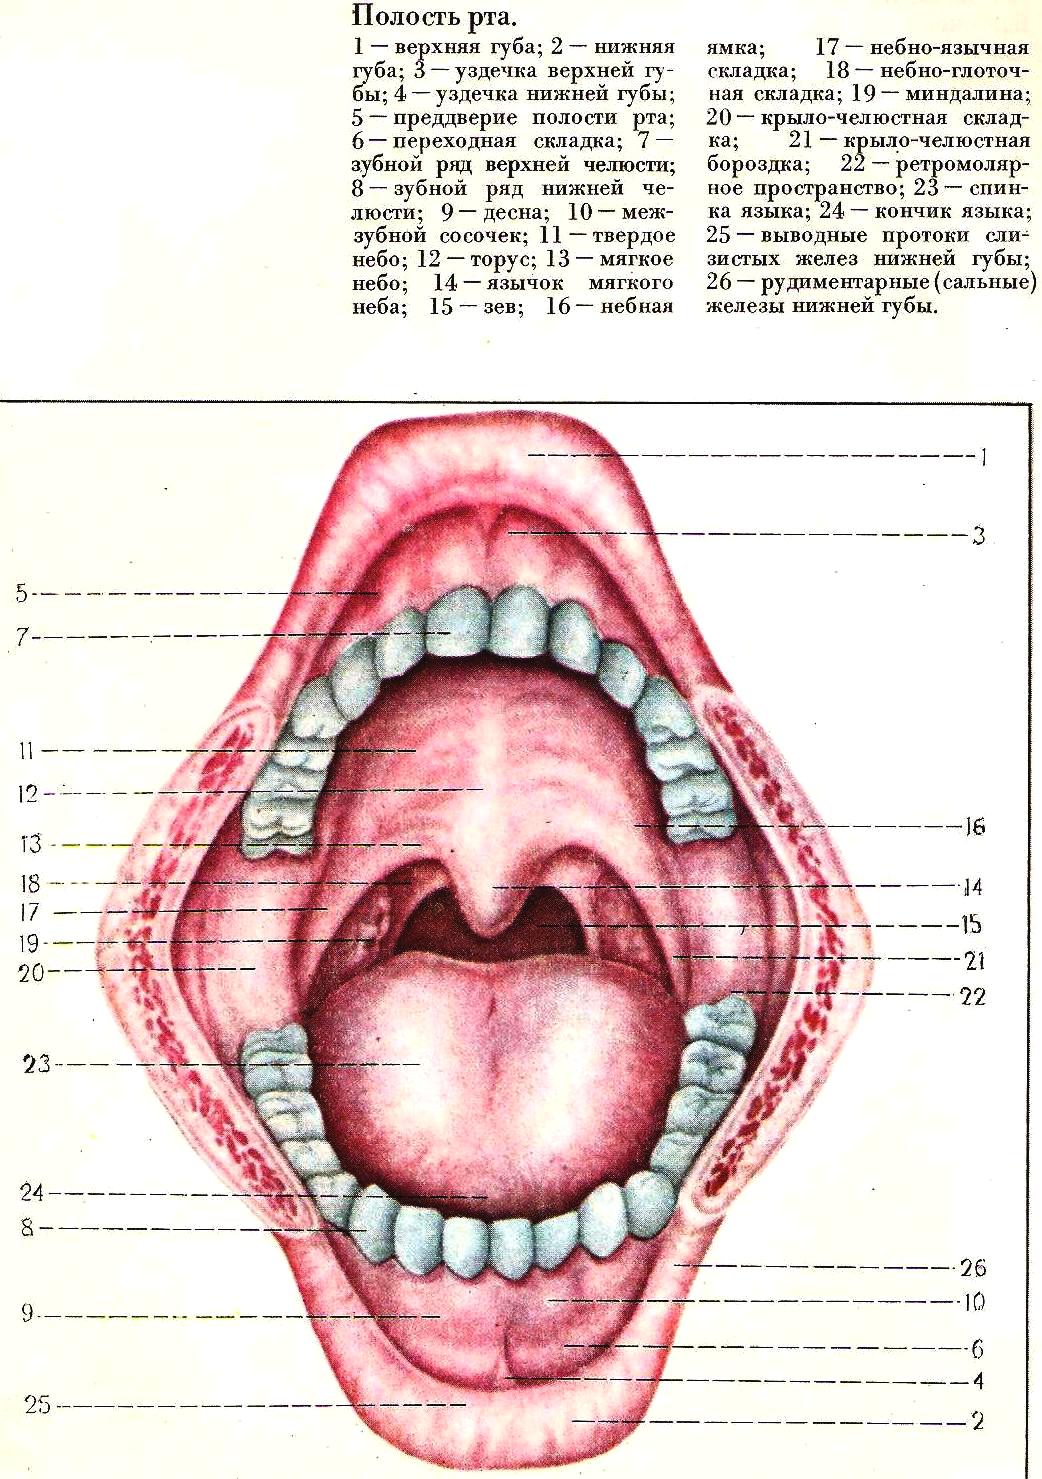 Зев. Анатомия полости рта крылочелюстная складка. Переходная складка ротовой полости. Переходная складка слизистой оболочки рта. Строение слизистой ротовой полости.